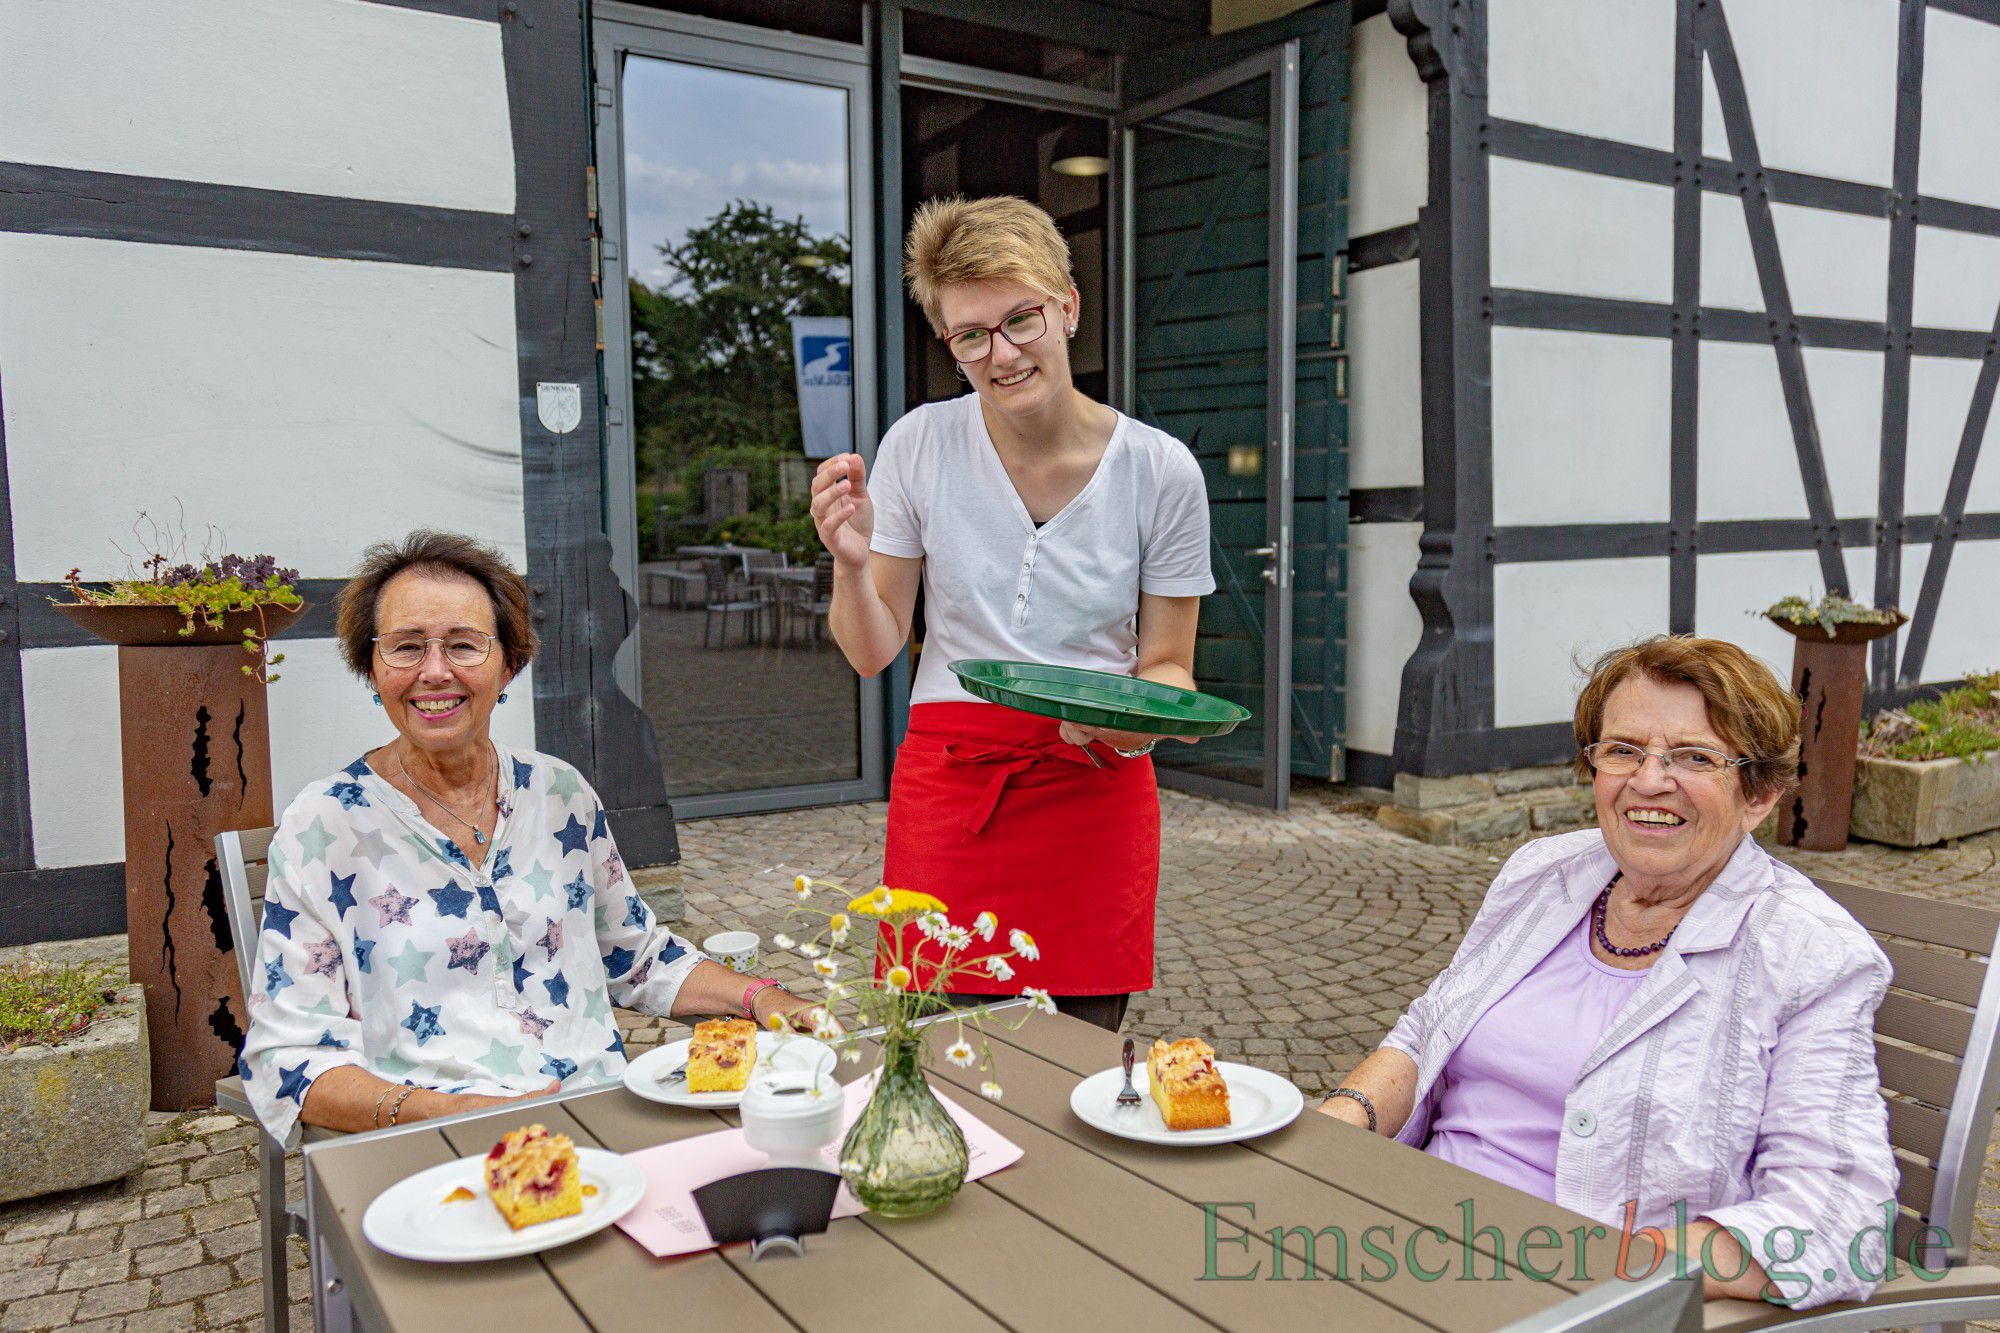 Die leckeren Kuchen und Torten sowie den Kaffee gibt's zum Eröffnungspreis von 1,50 Euro. (Foto: P. Gräber - Emscherblog)